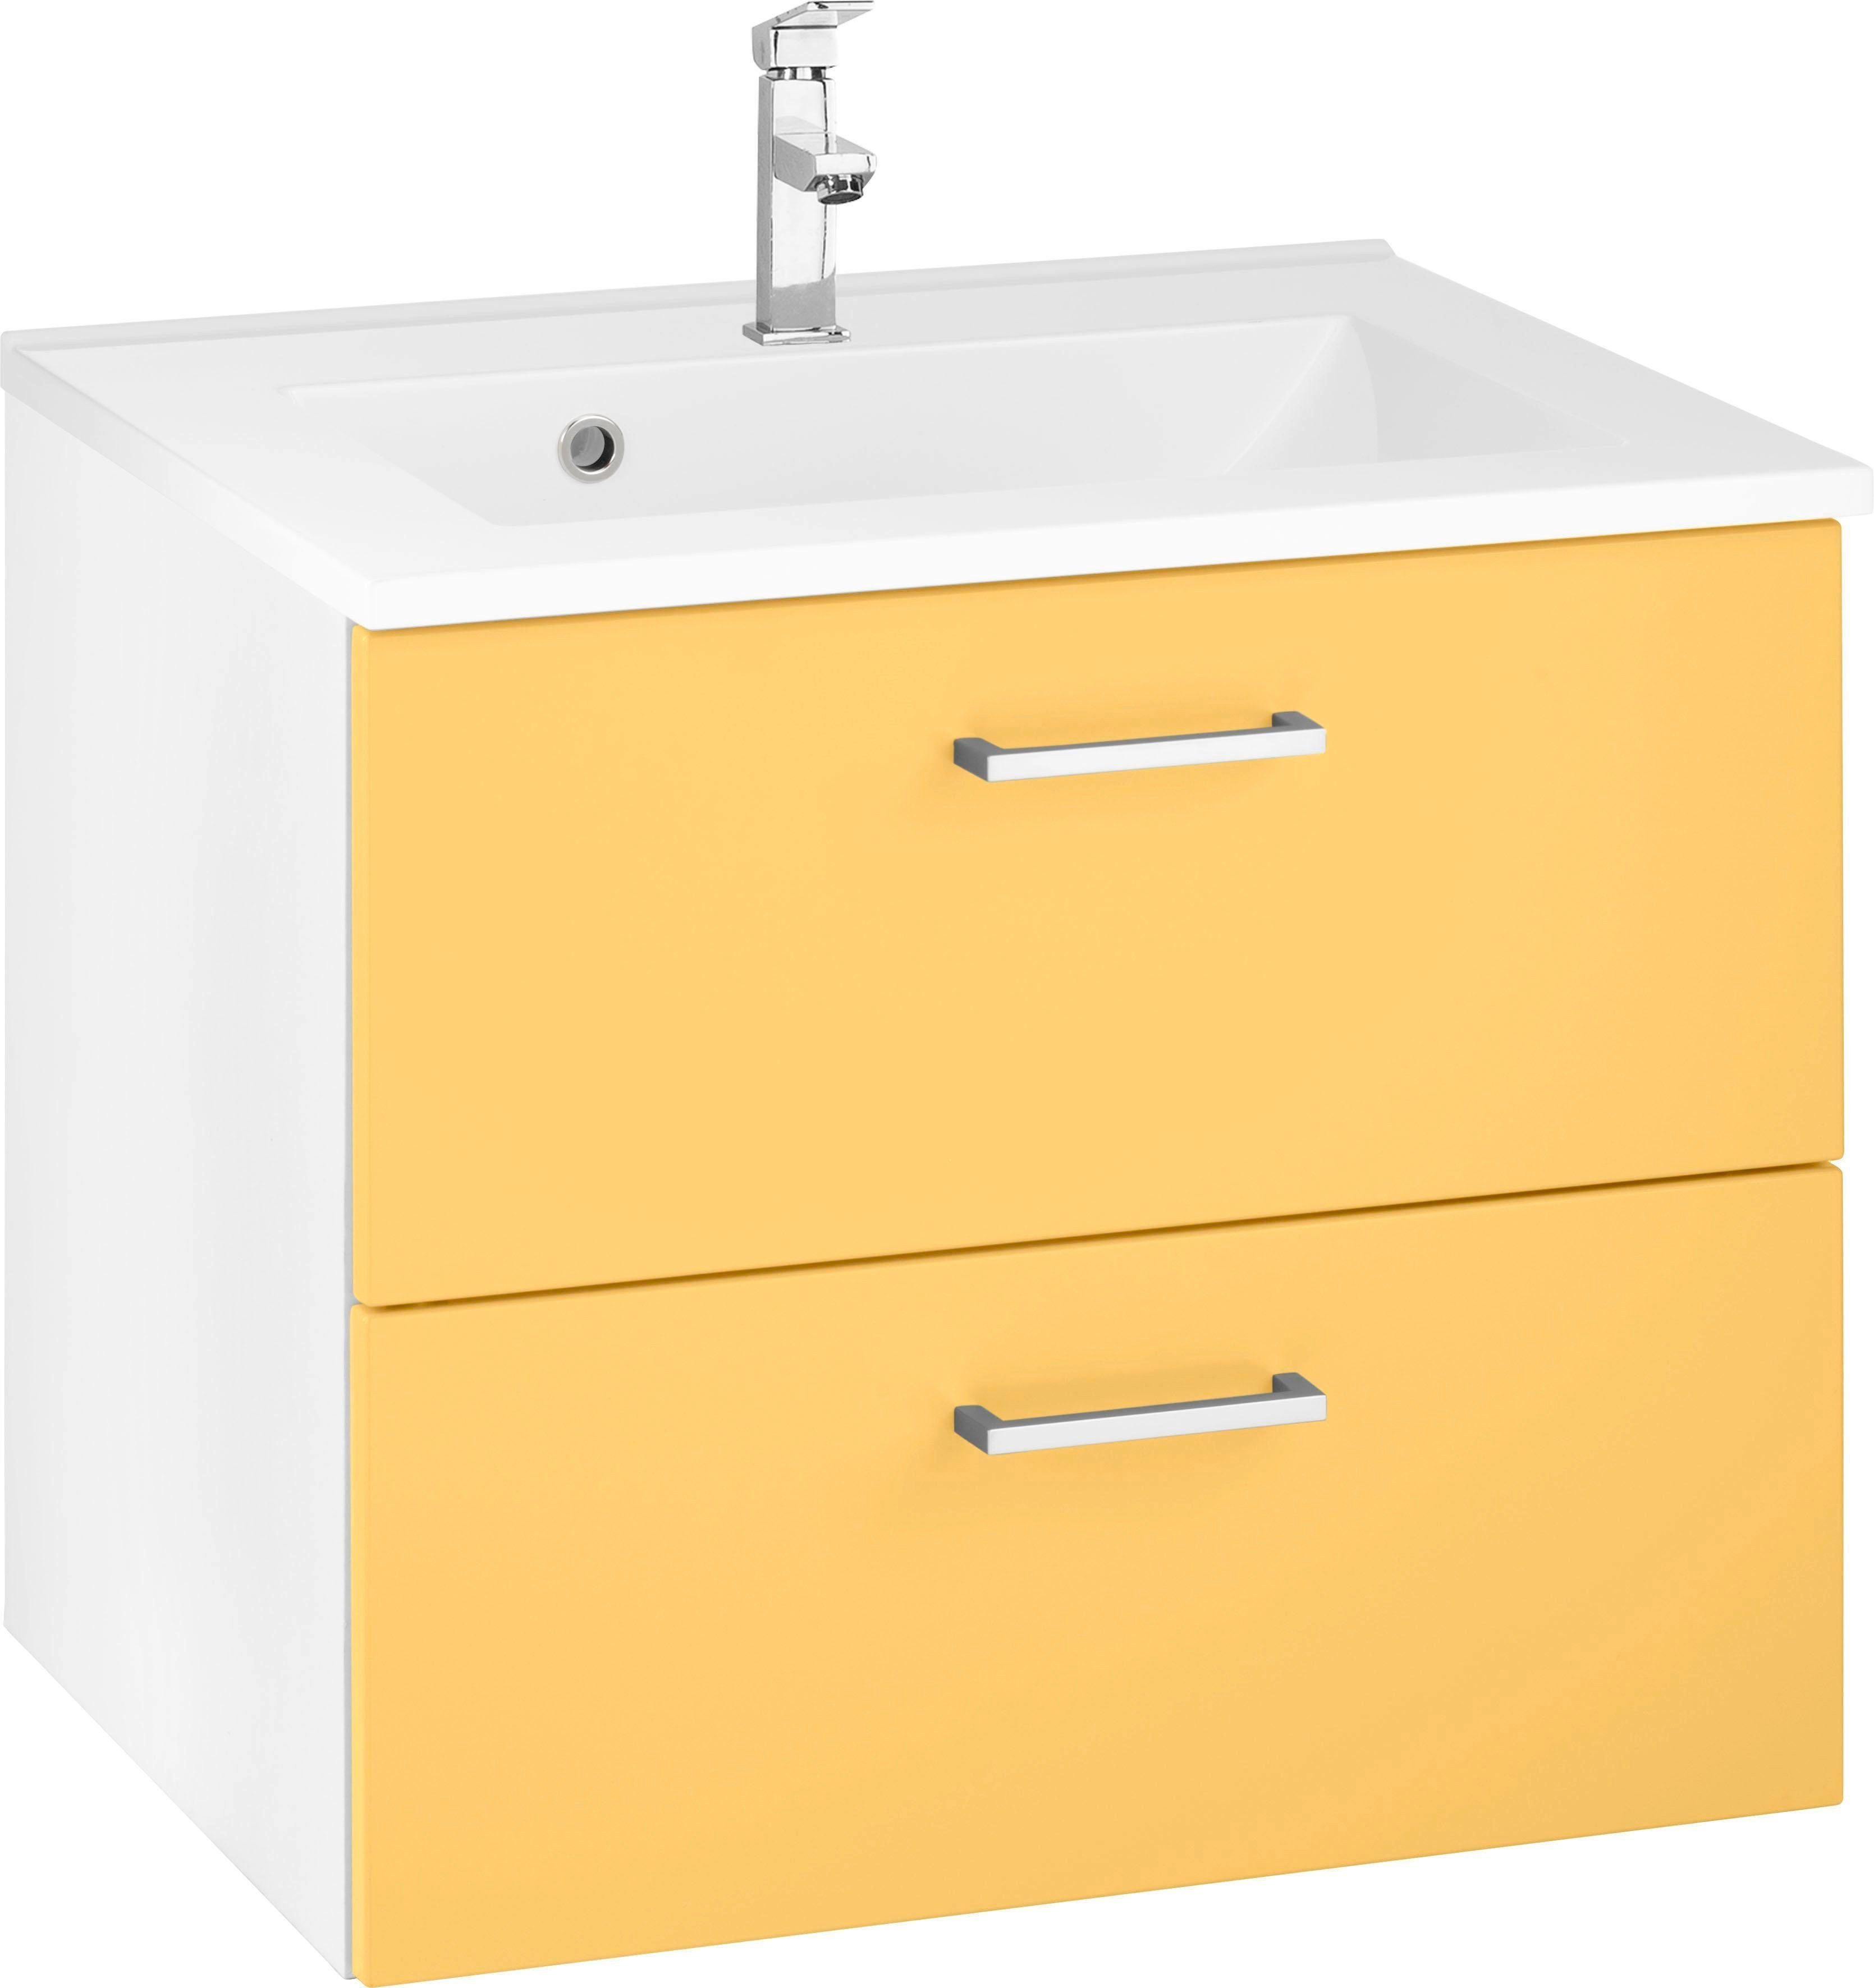 HELD MÖBEL Waschbeckenunterschrank Ribera Badmöbel, Waschtisch inkl. Waschbecken, Breite 60 cm gelb/gelb/weiß